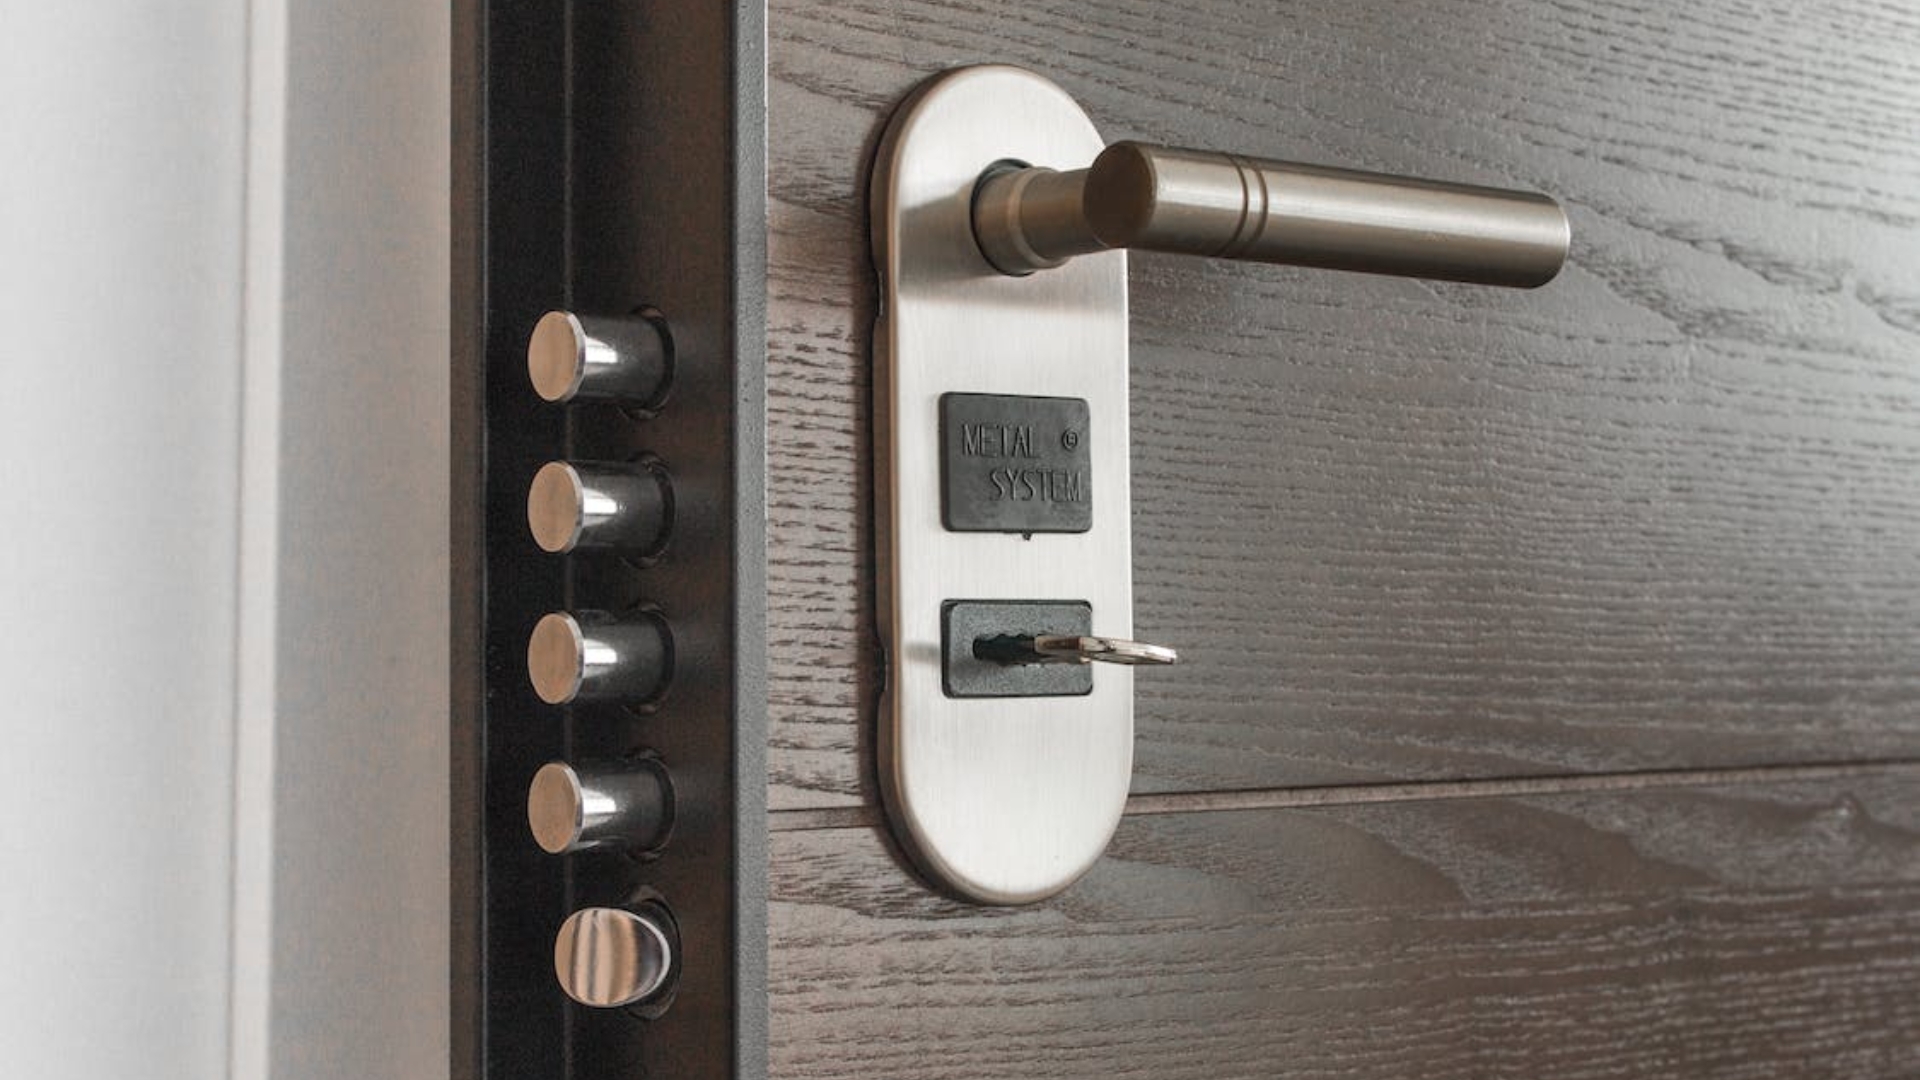 A door lever handle for an indoor door